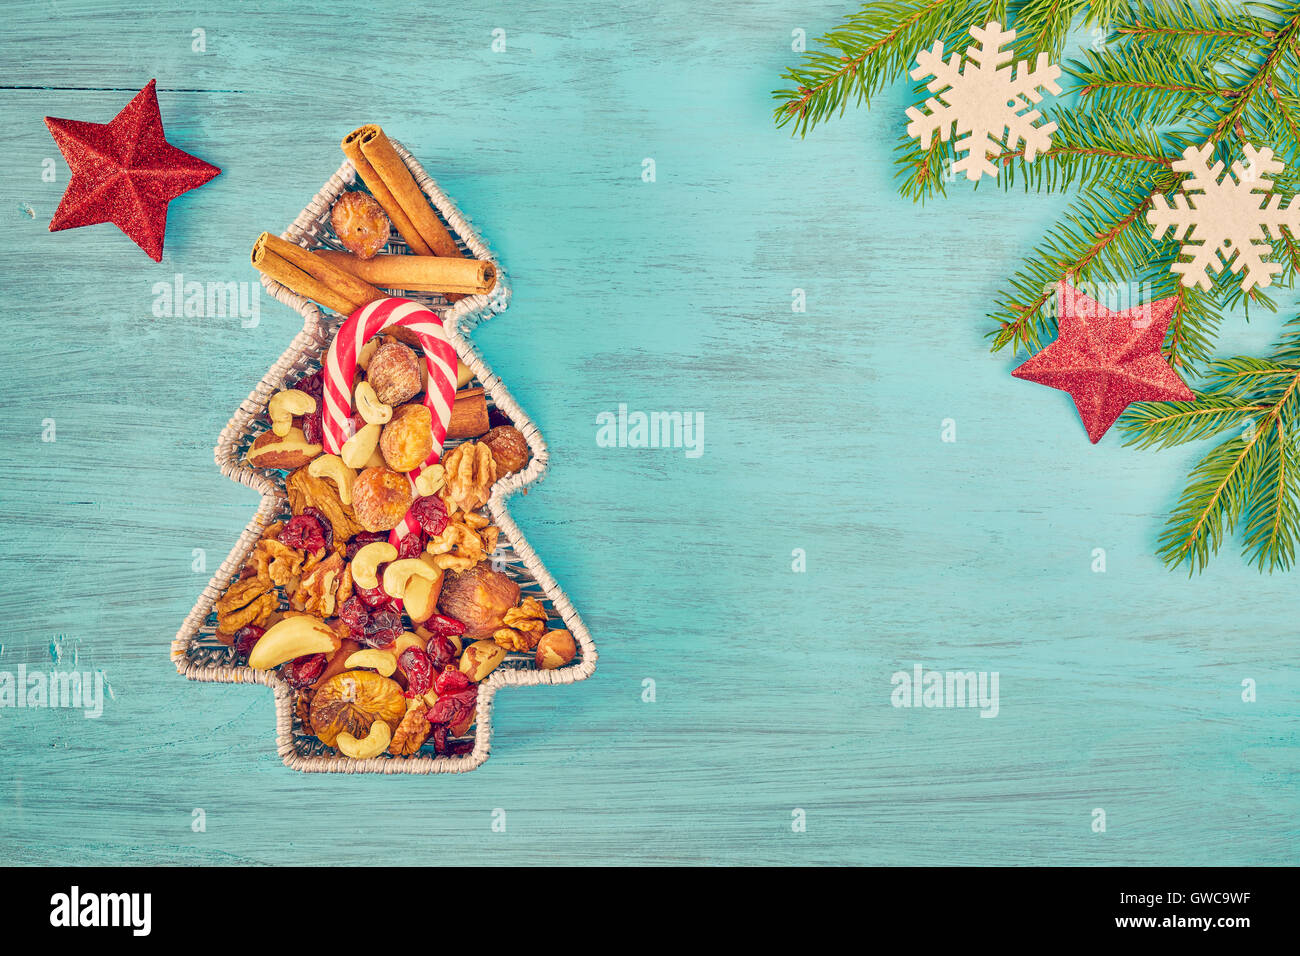 Retrò tonica albero di Natale a forma di contenitore riempito con dadi e frutta secca su una tavola in legno rustico, vista dall'alto con spazio di copia Foto Stock